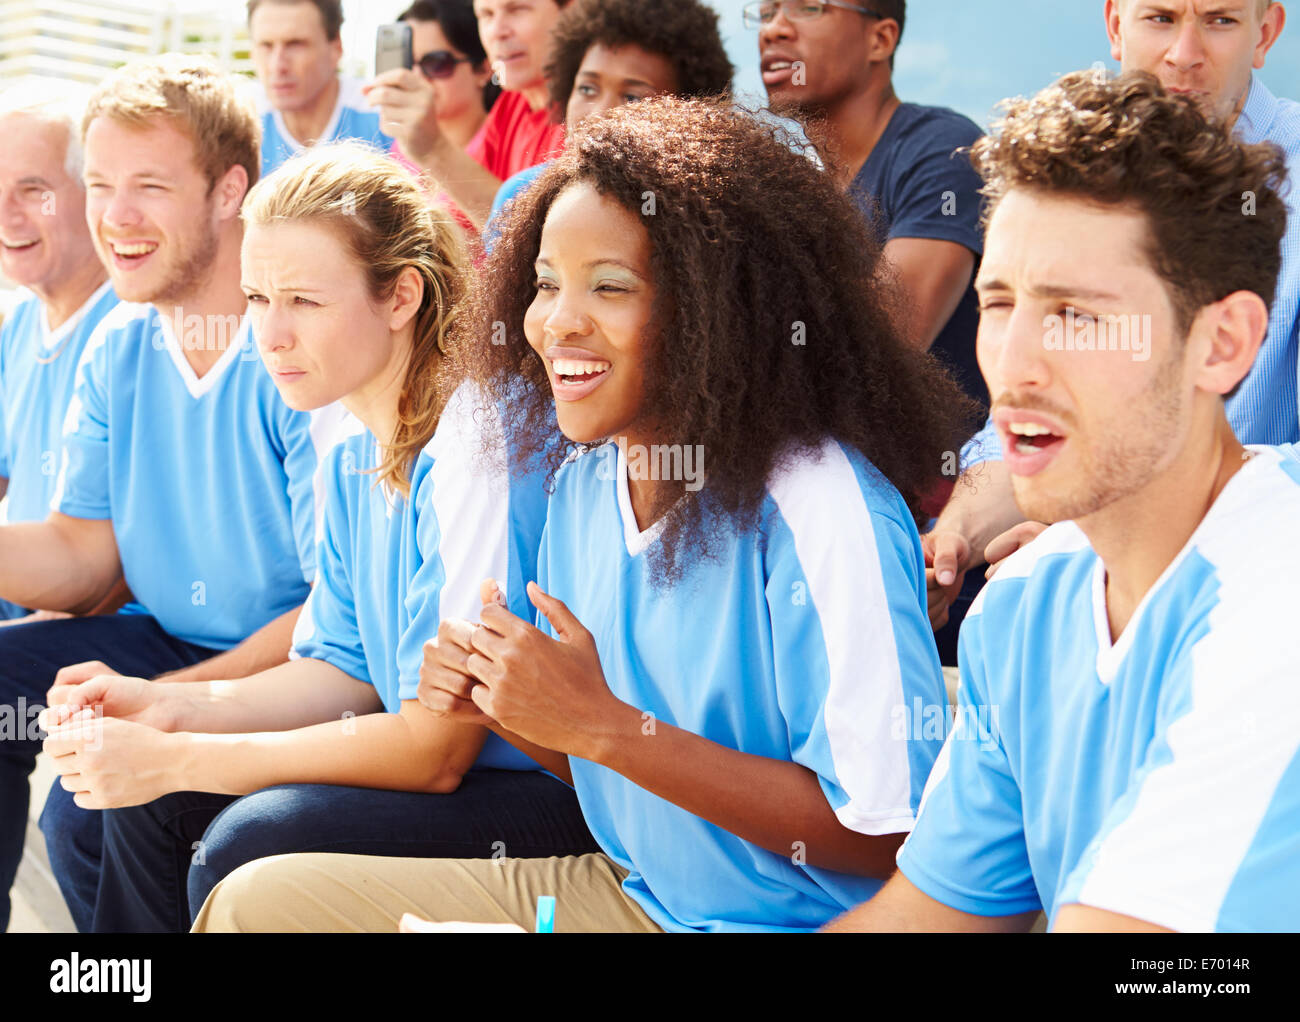 Zuschauer In Teamfarben gerade Sport-Event Stockfoto